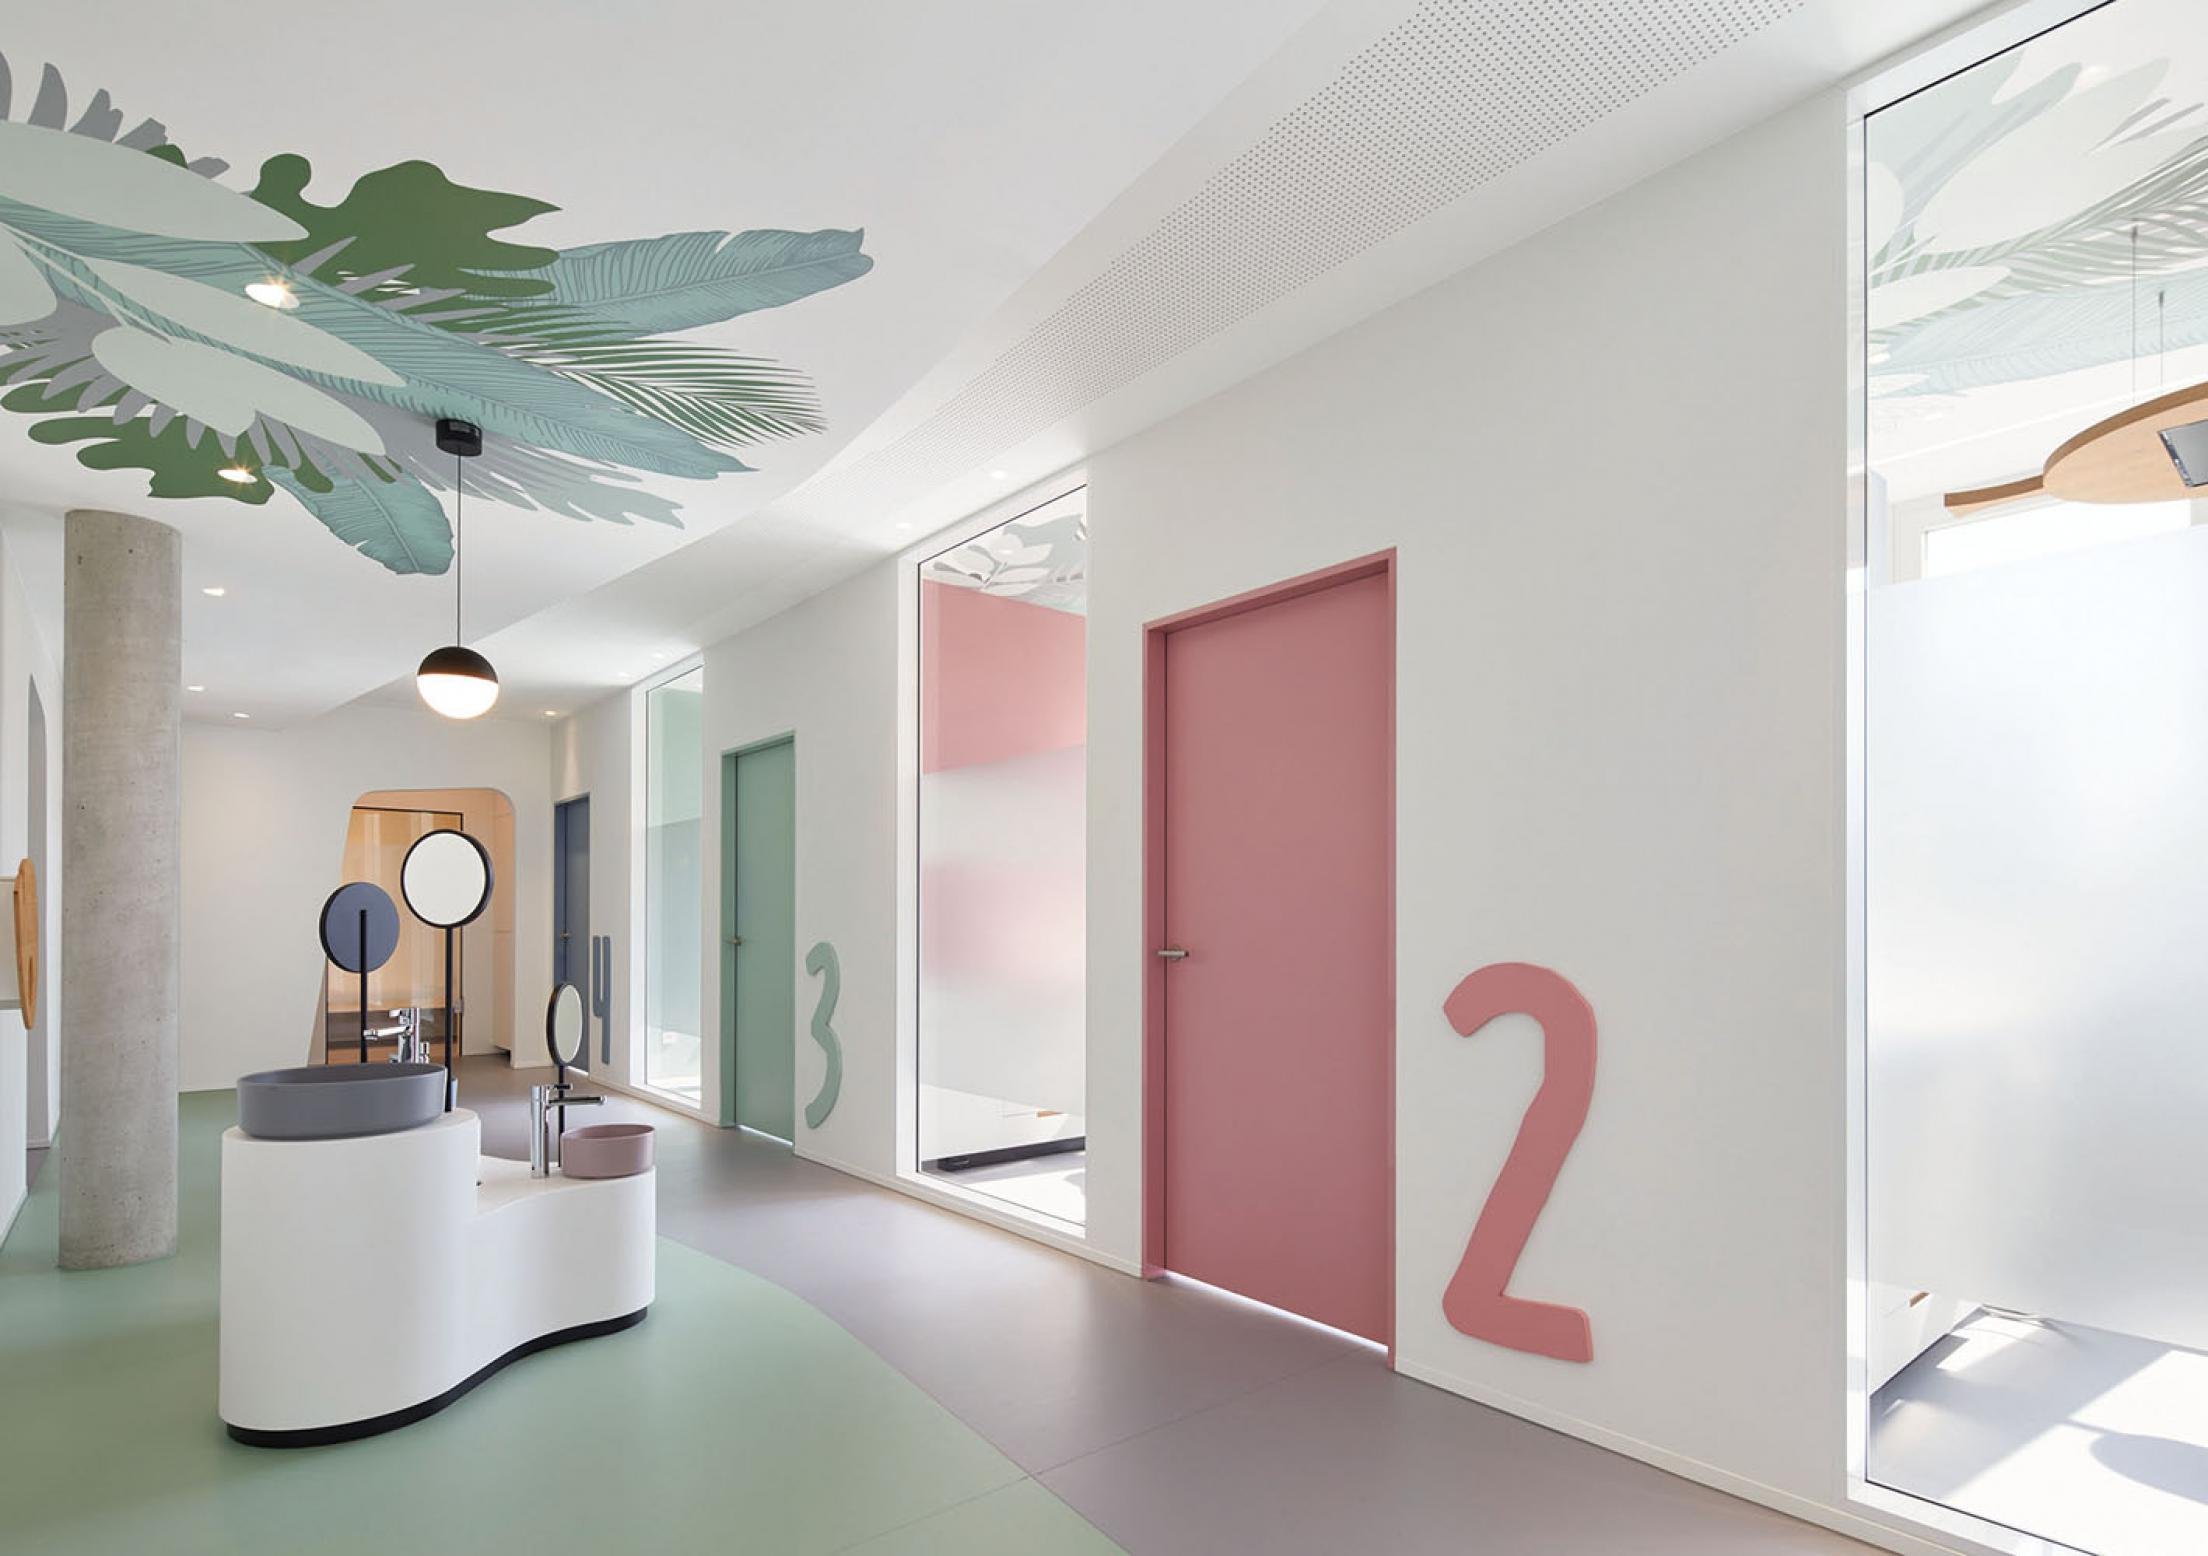 Клиника идея. Цветовое решение стен в больницах. Оформление клиники цветы. Вывеска дизайн студии интерьера.